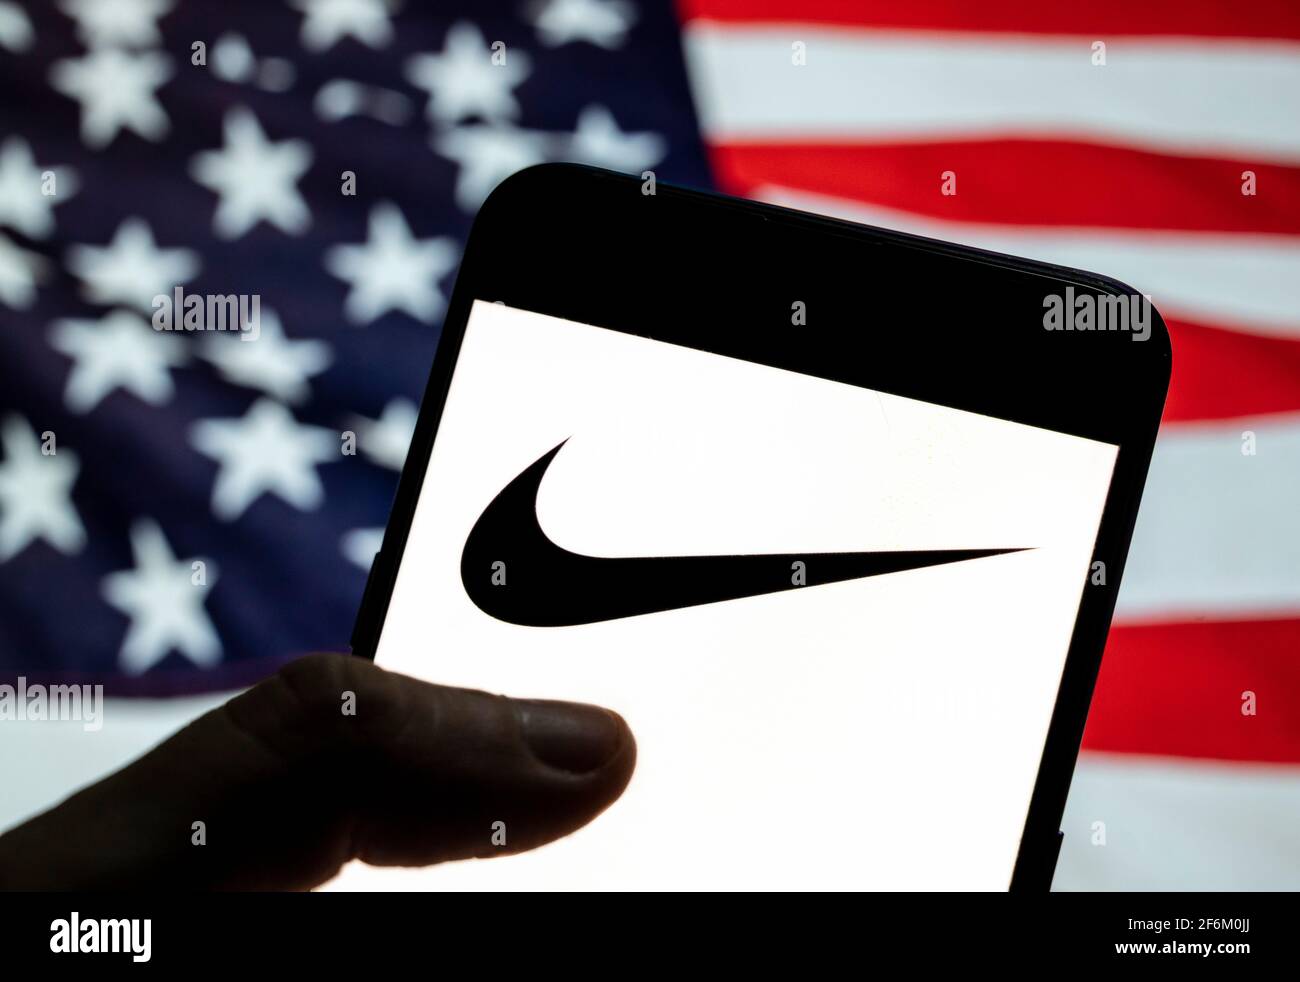 En esta ilustración de la foto, el logotipo de la Marca de ropa deportiva  multinacional estadounidense Nike se ve en un dispositivo móvil Android con  la bandera de Estados Unidos de América (